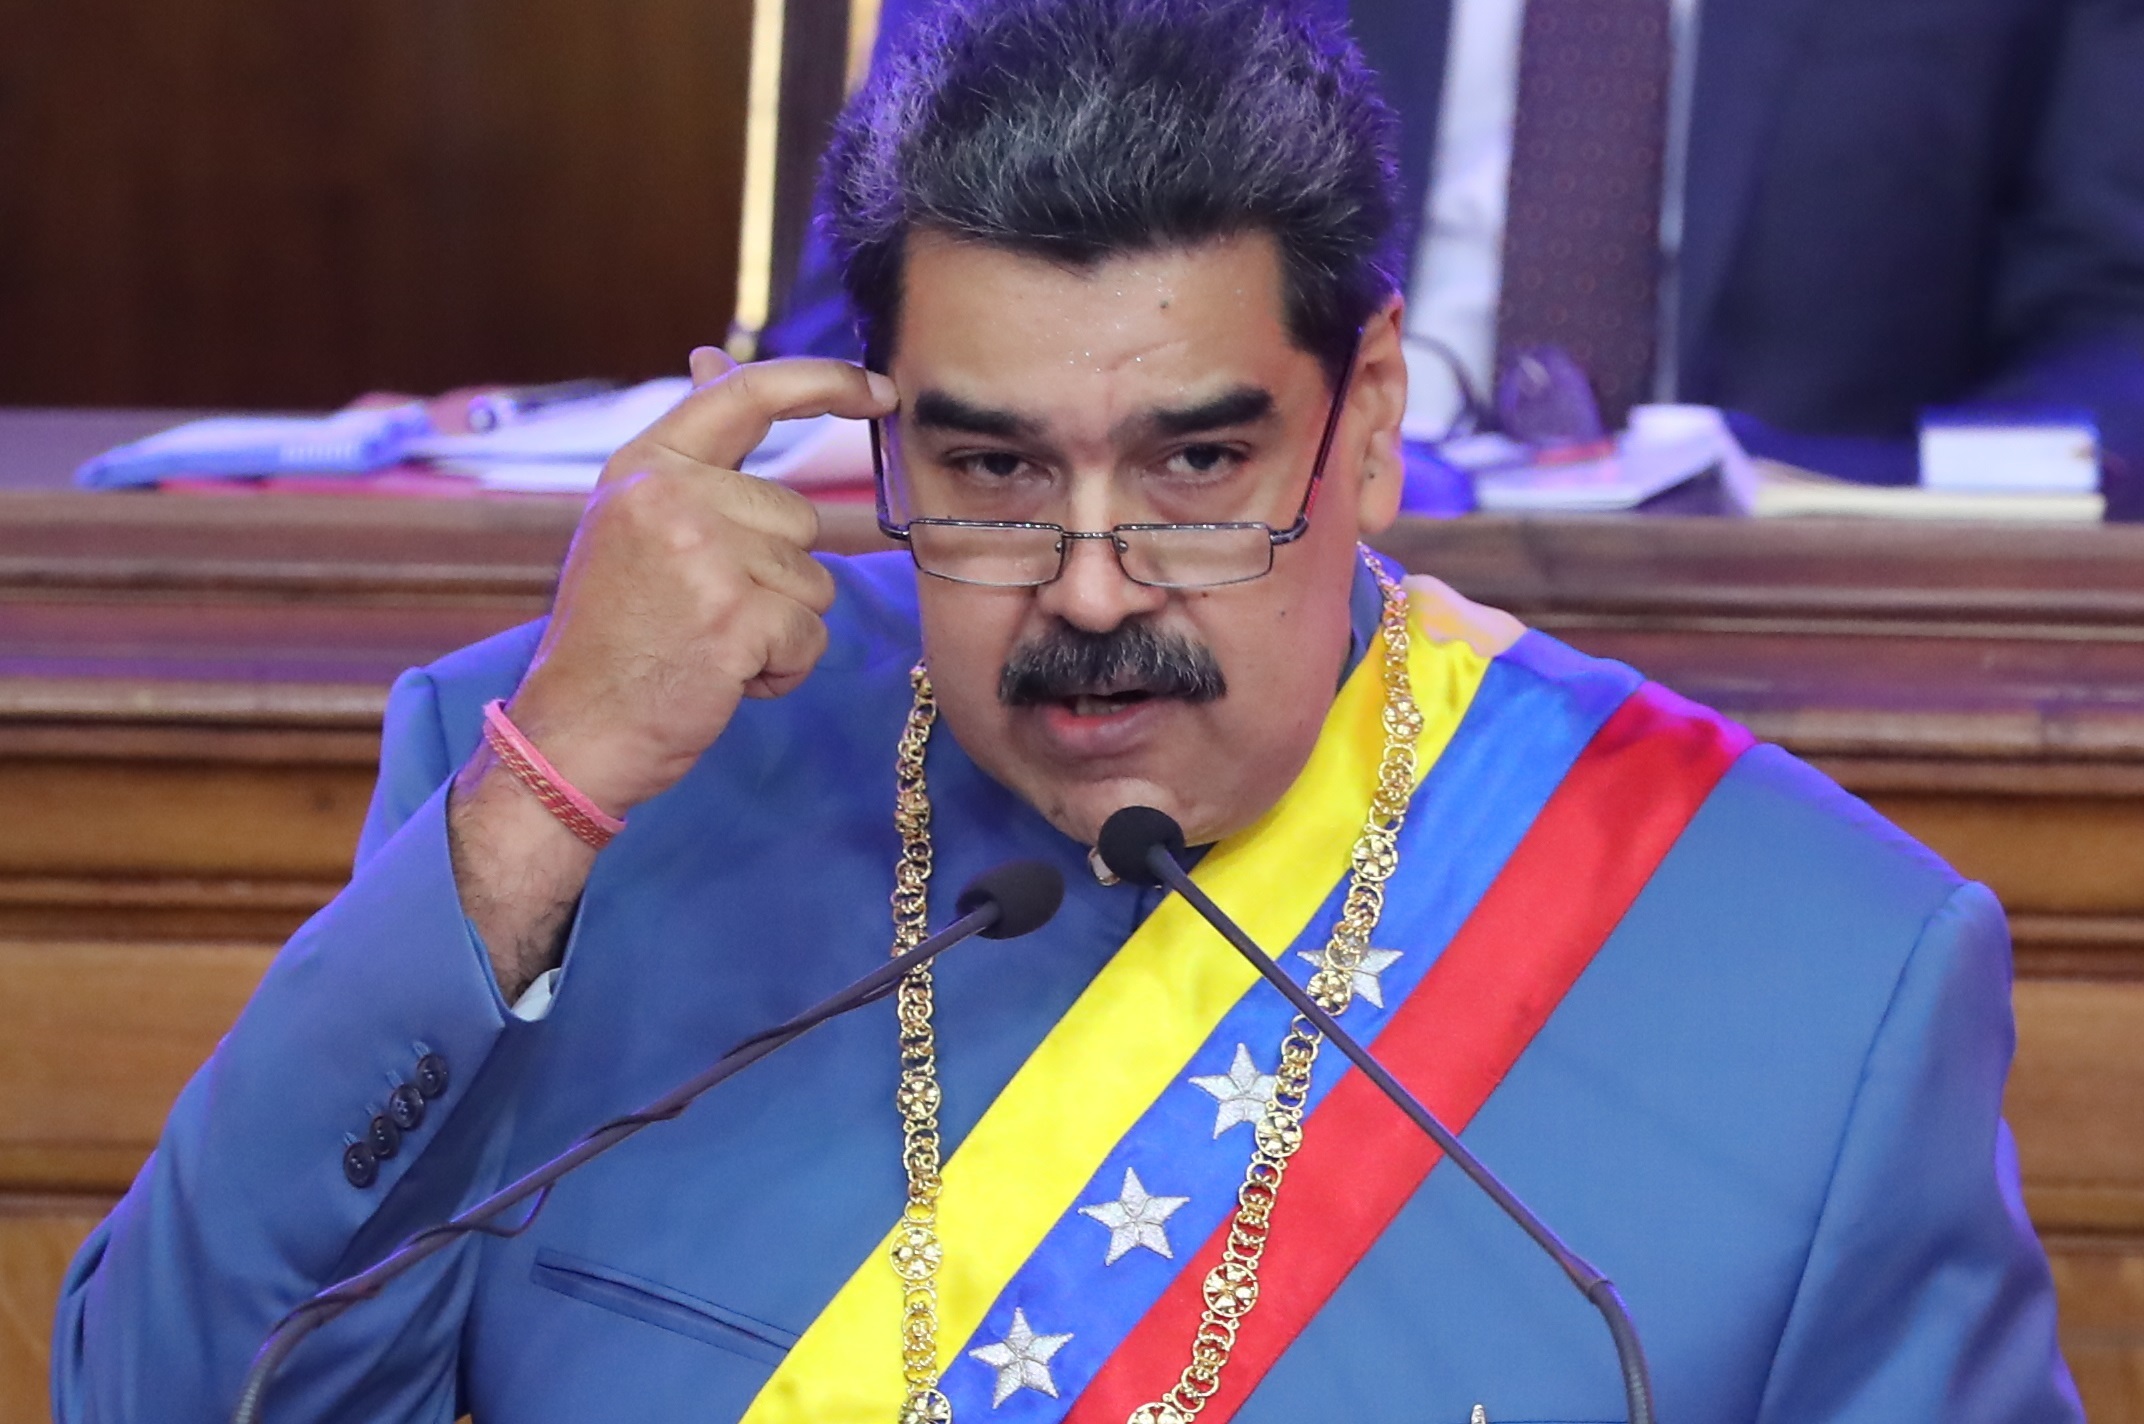 El régimen de Maduro acusa a Guyana de intentar “fabricar un conflicto” regional